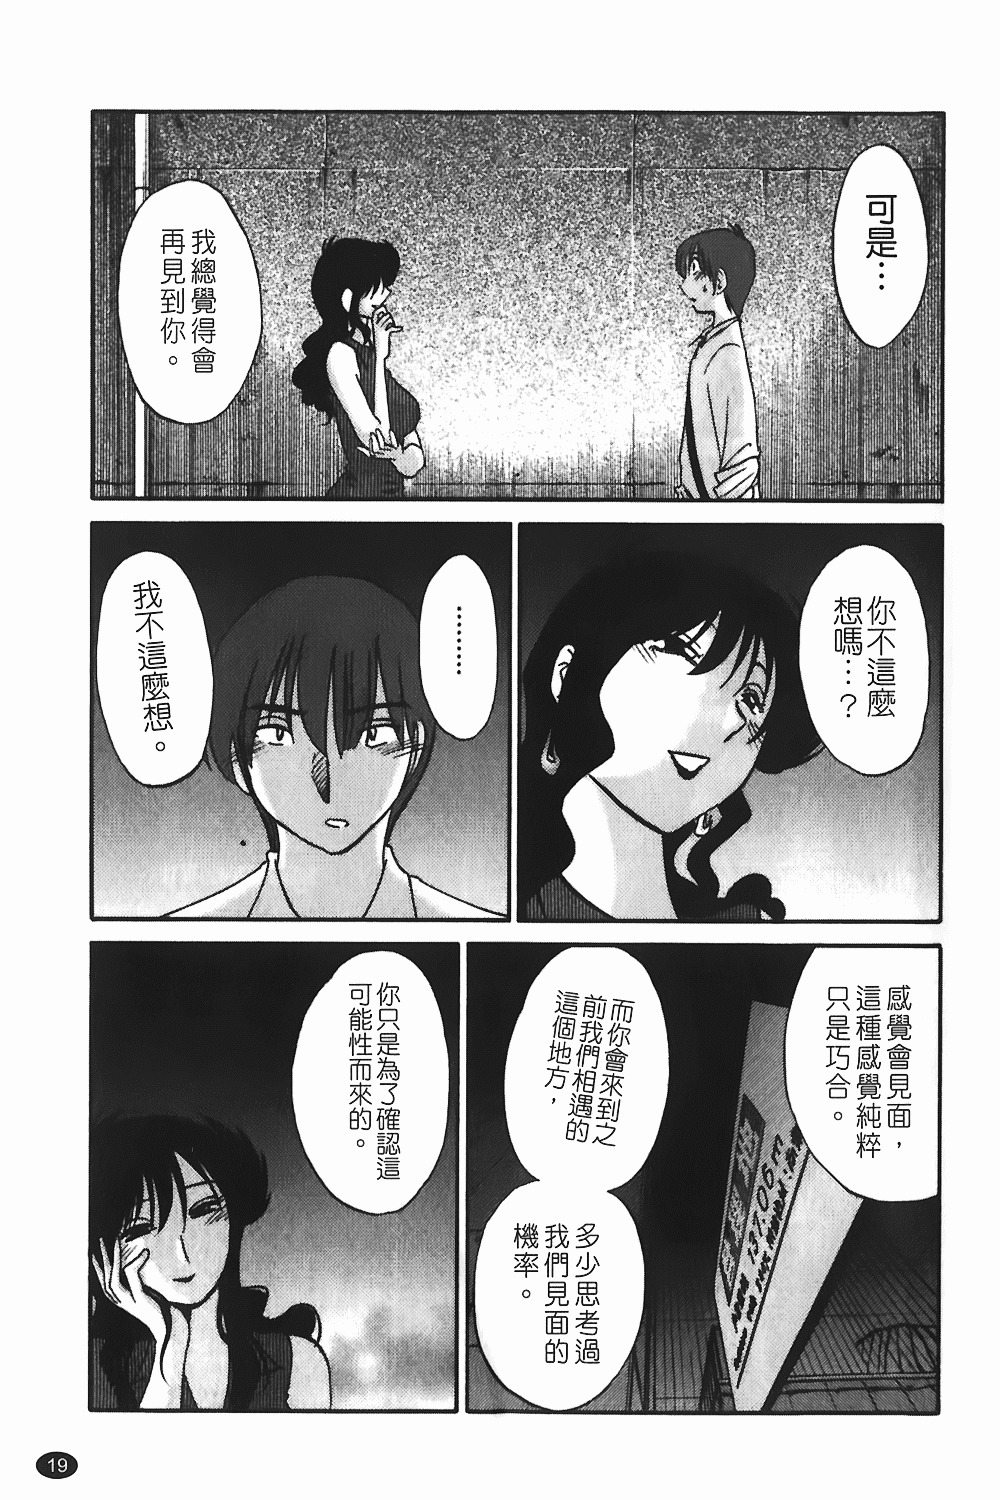 [TsuyaTsuya] Monokage no Iris 1 | 陰影中的伊利斯 1 [Chinese] page 16 full